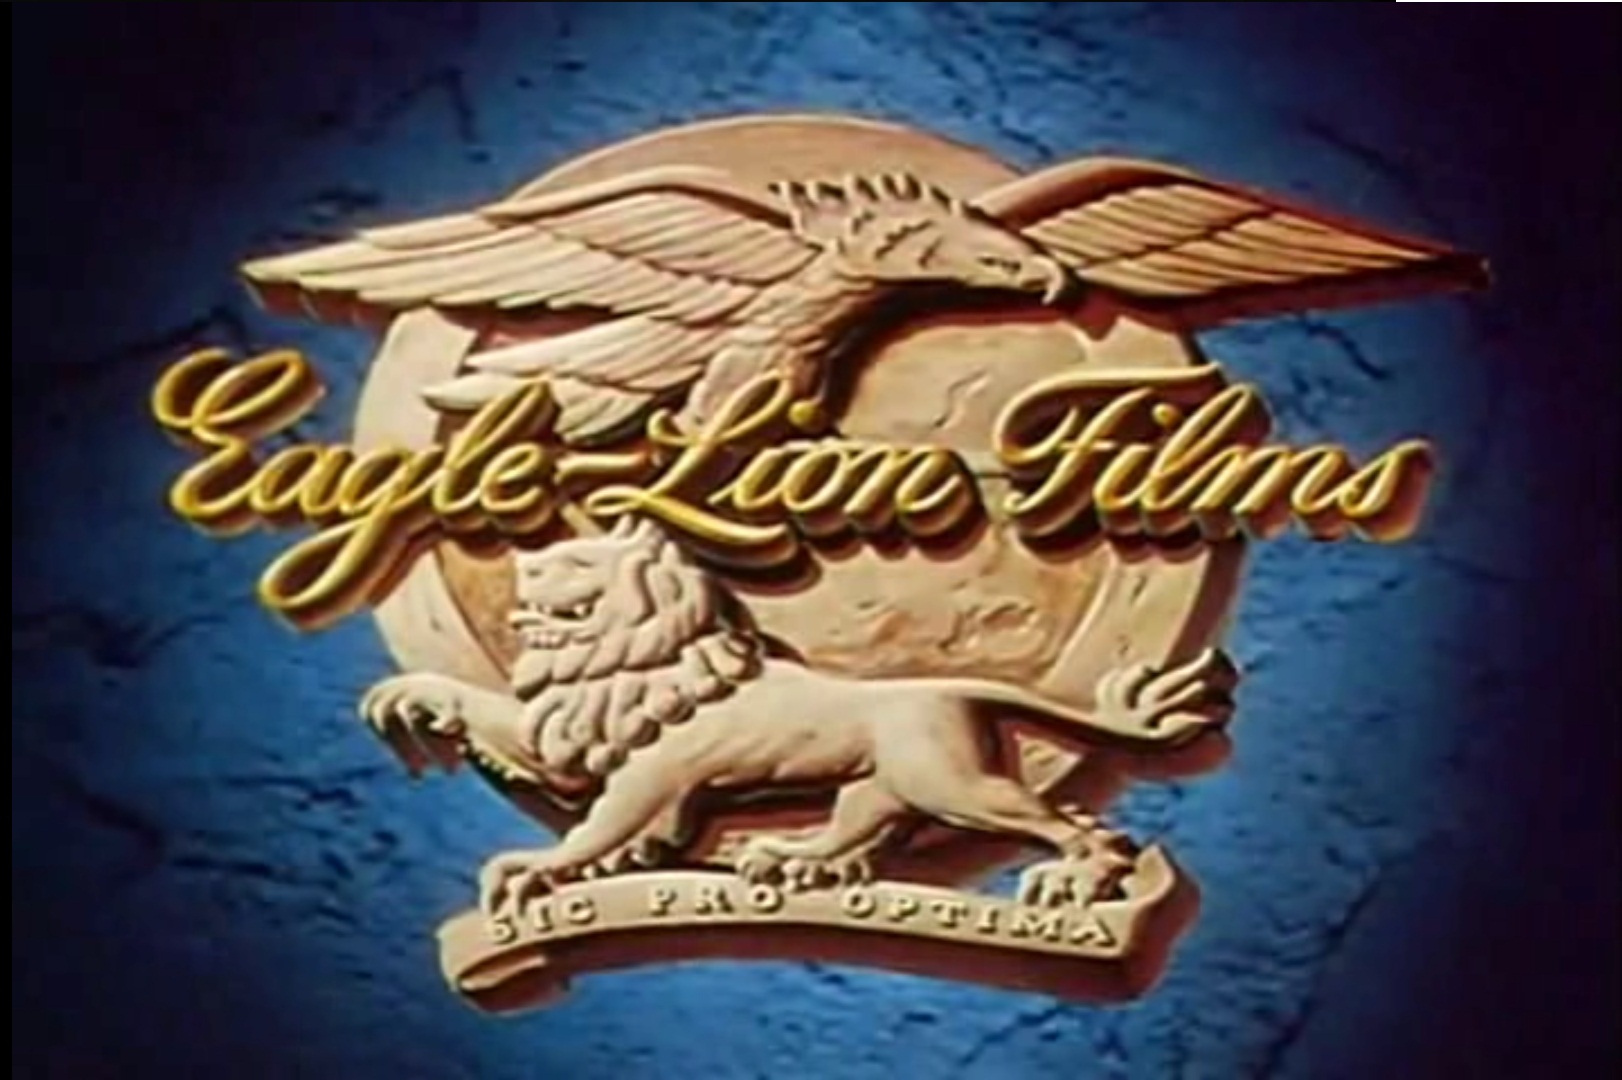 Eagle-Lion Films